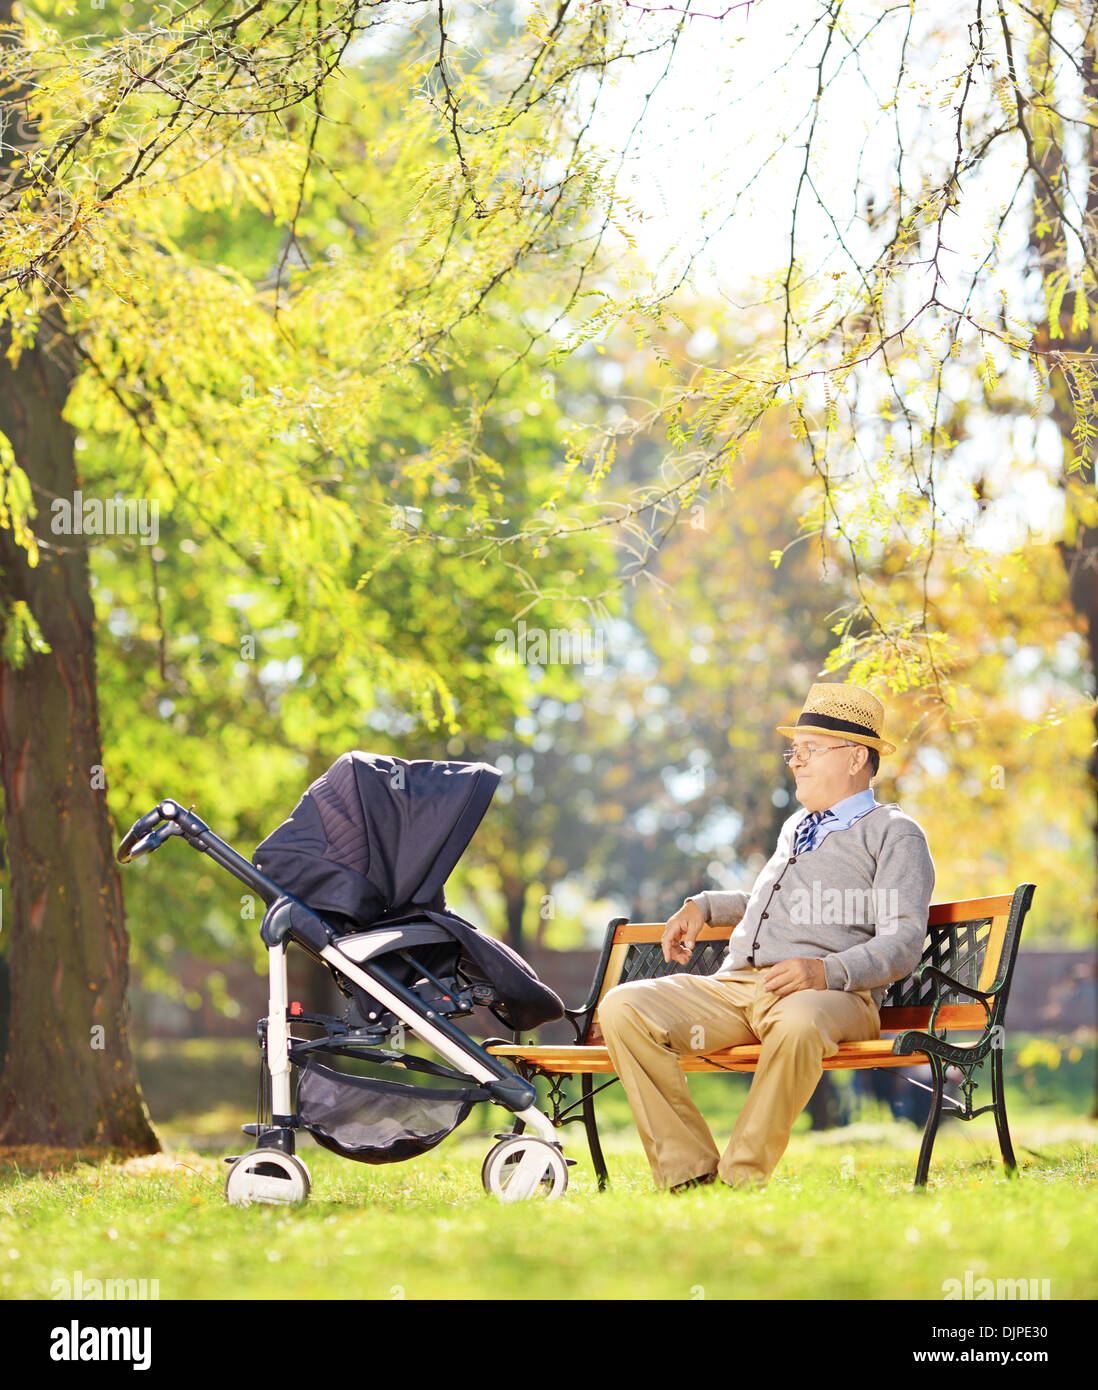 Grand-père assis sur un banc et en regardant son neveu bébé dans une poussette, dans un parc Banque D'Images